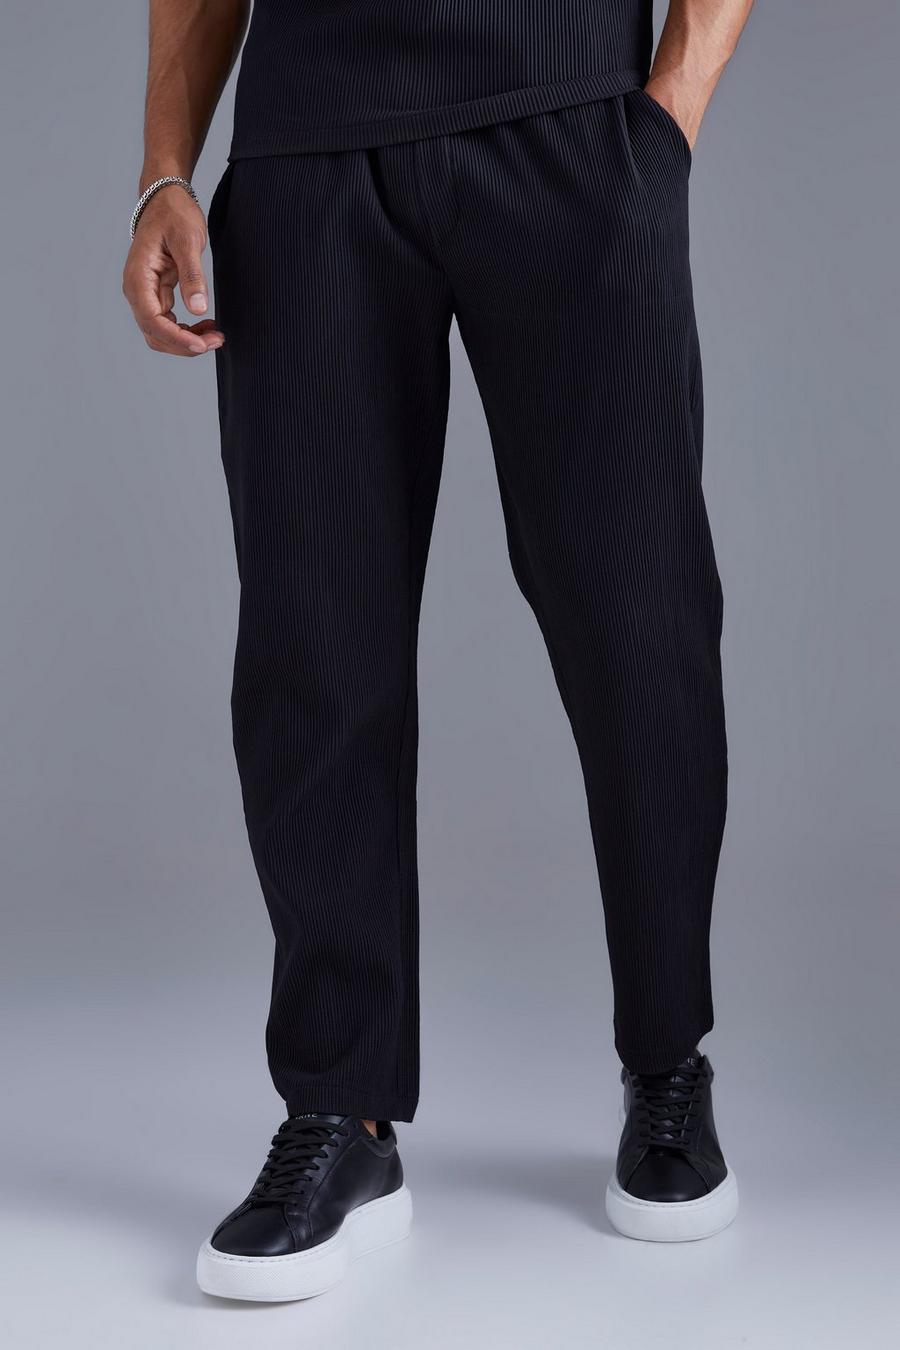 Pantaloni affusolati con pieghe e vita elasticizzata, Black negro